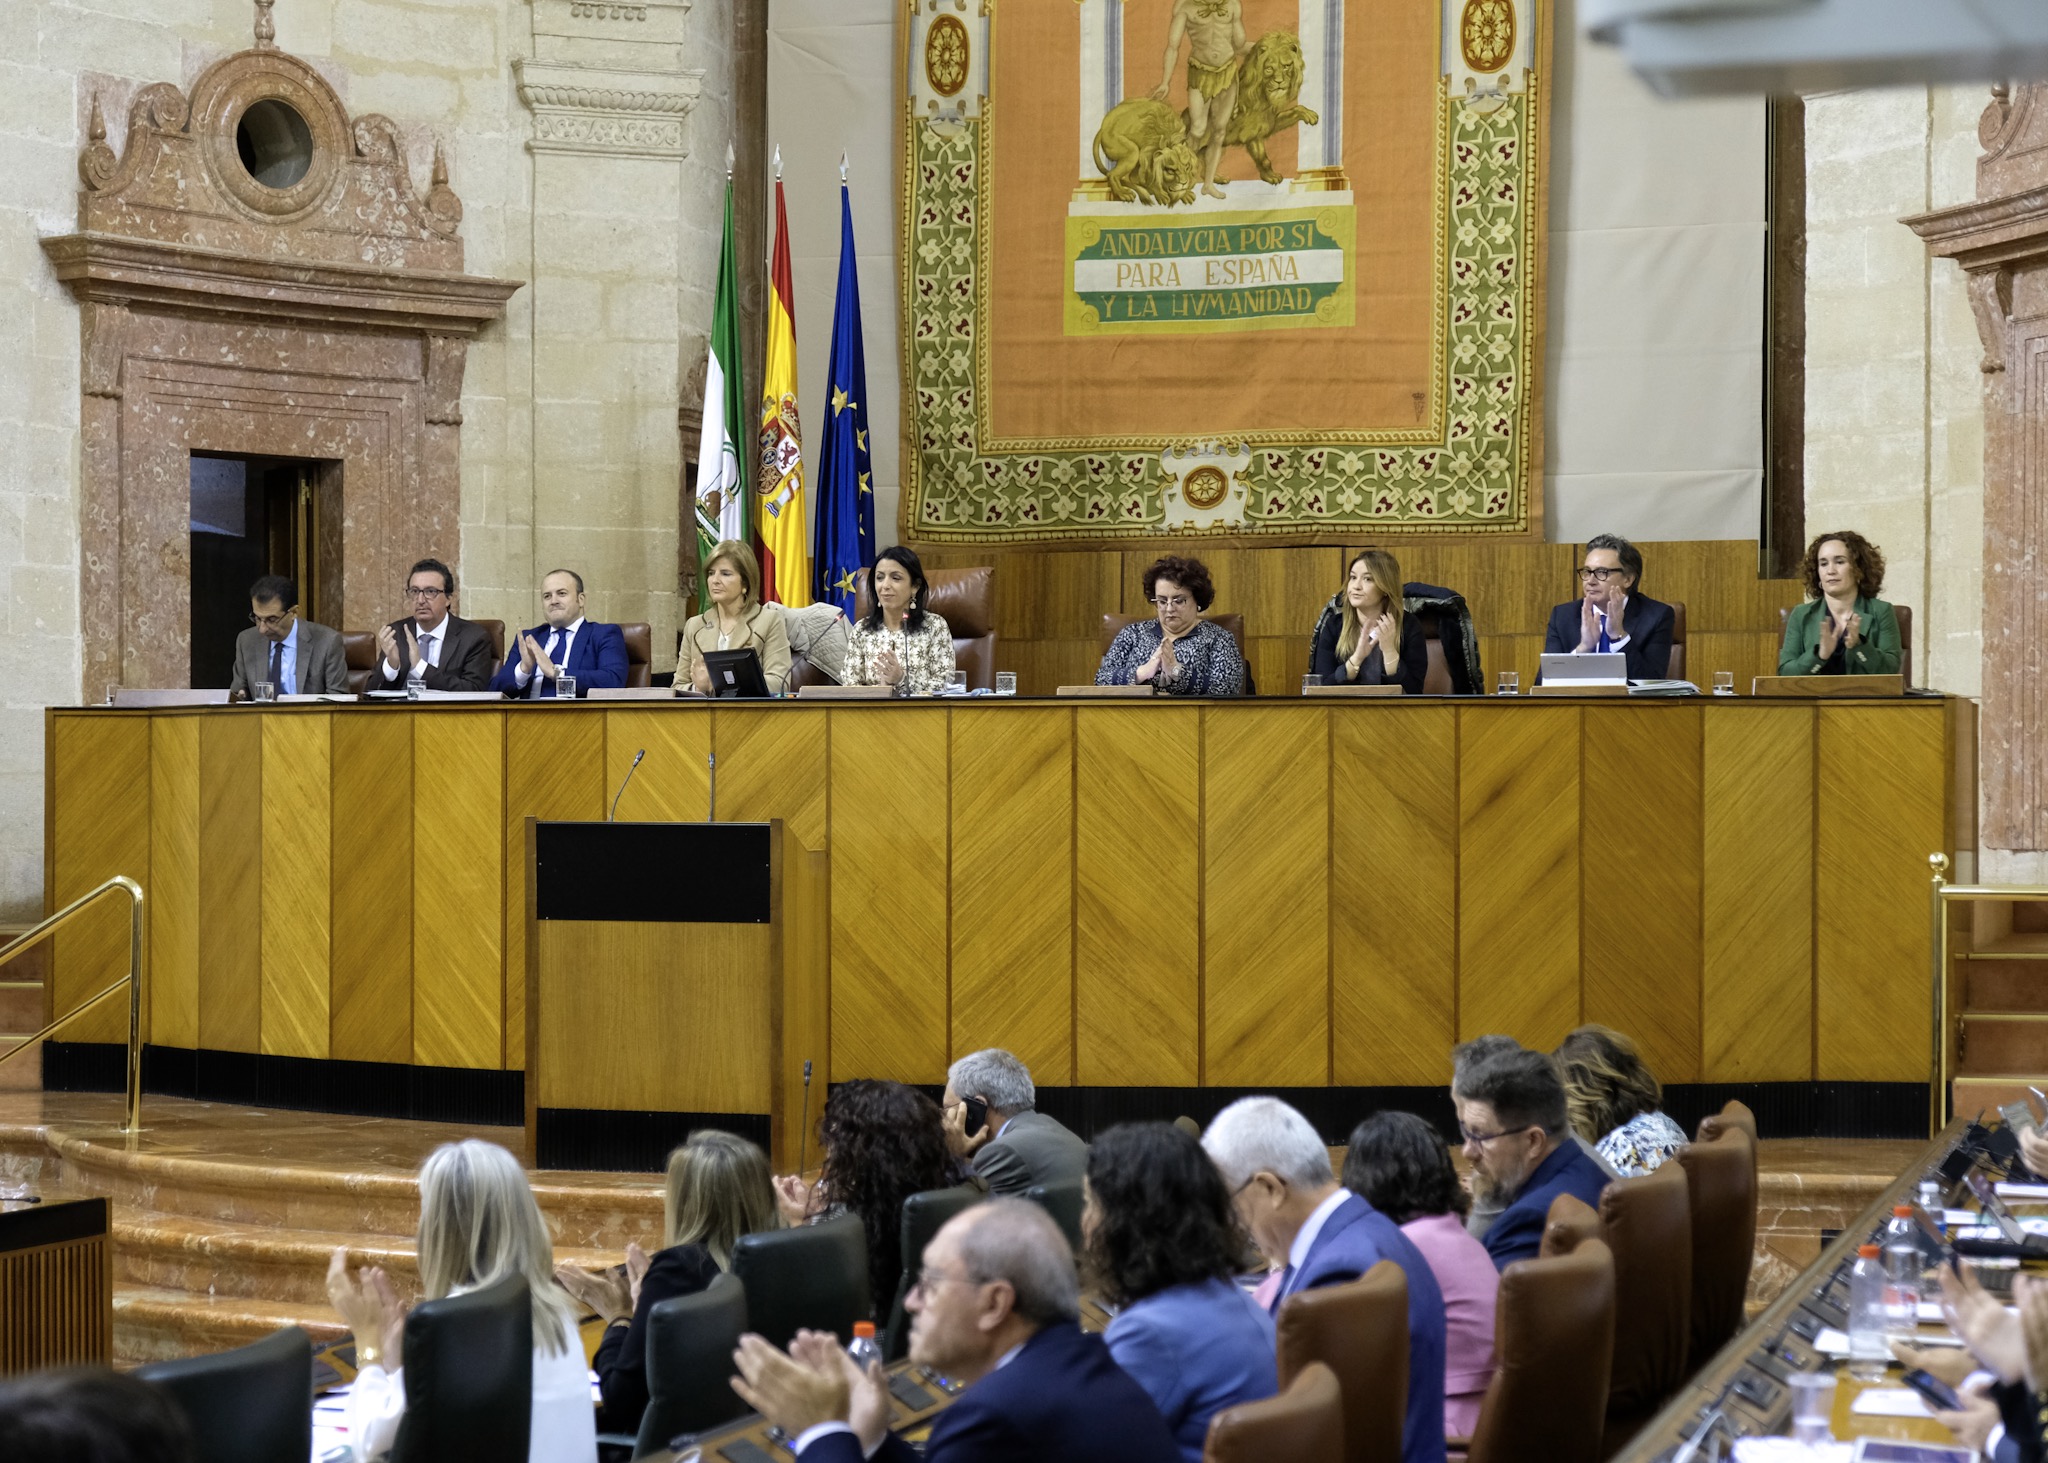  La presidenta del Parlamento, Marta Bosquet, ha dado lectura durante el Pleno a la Declaracin Institucional para la mejora de la vida de las personas a travs de la puesta en prctica de medidas destinadas a mejorar la accesibilidad cognitiva
